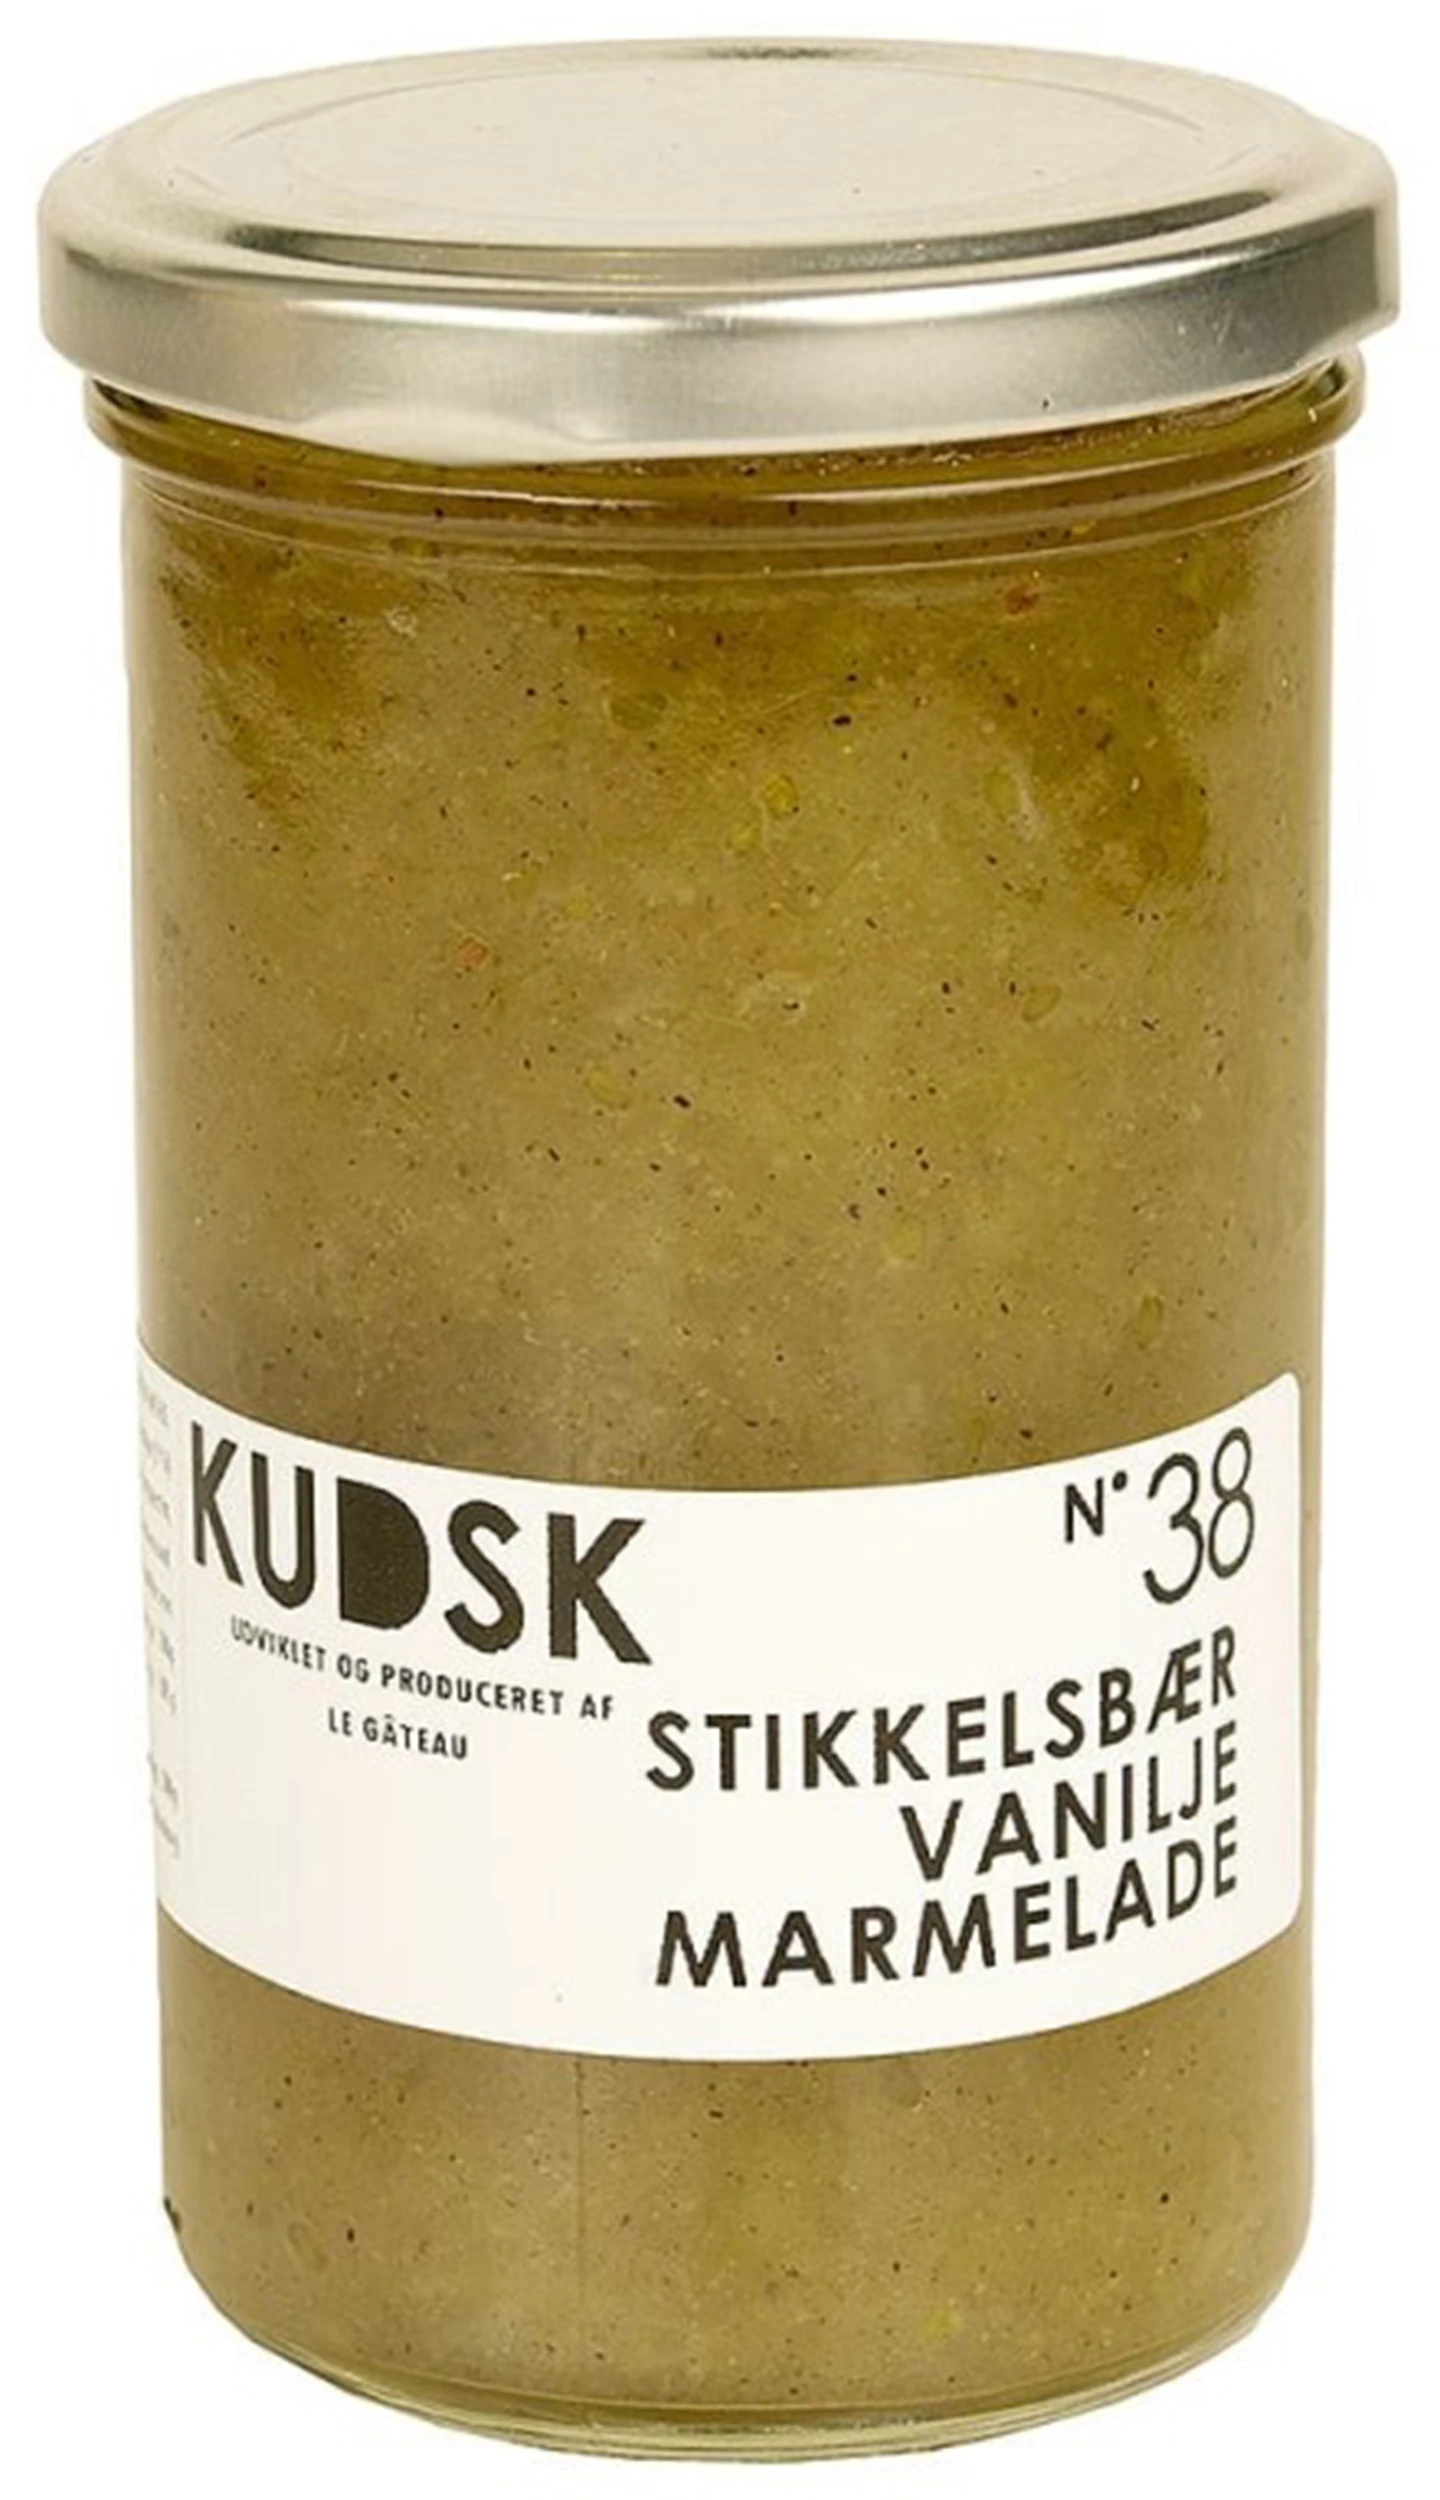 Løgismose Delikatesser kudsk Marmelade stikkelsbær vanilje 300g - 216458